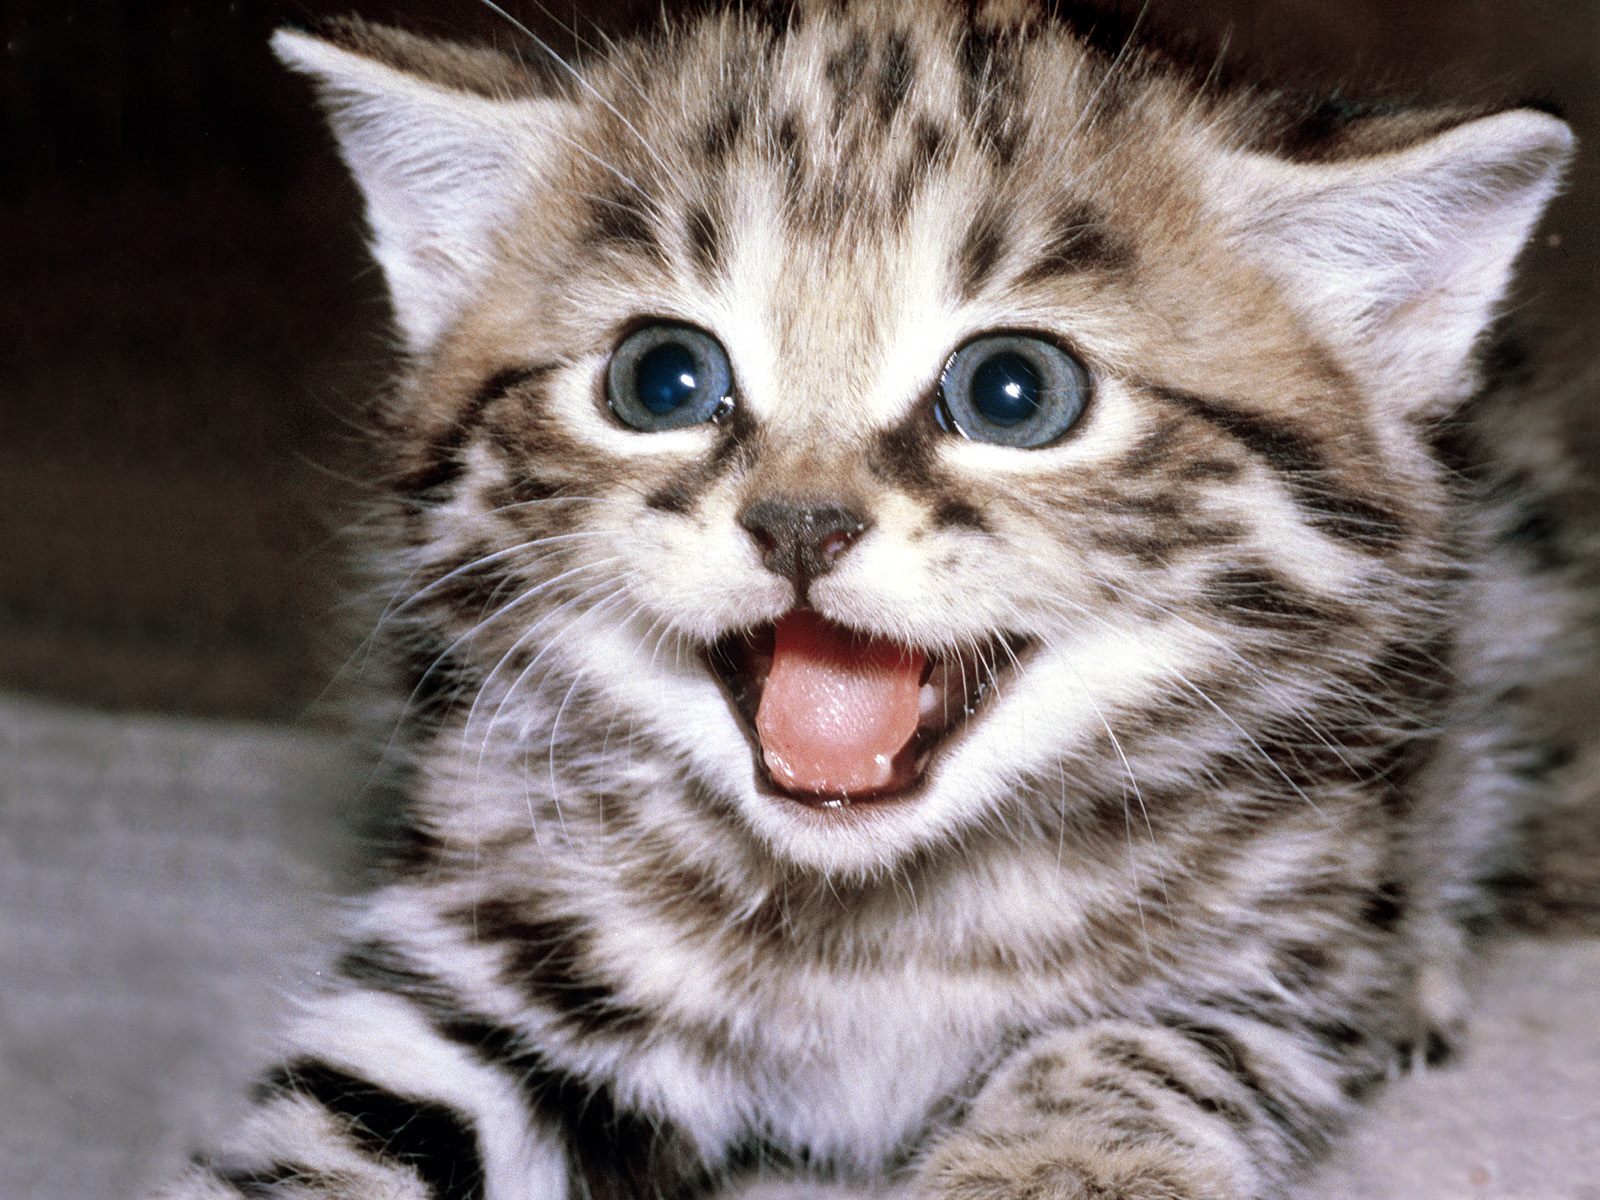 고양이 바탕화면 다섯번째~ 귀엽고 깜찍한 고양이 고화질 바탕화면 사진